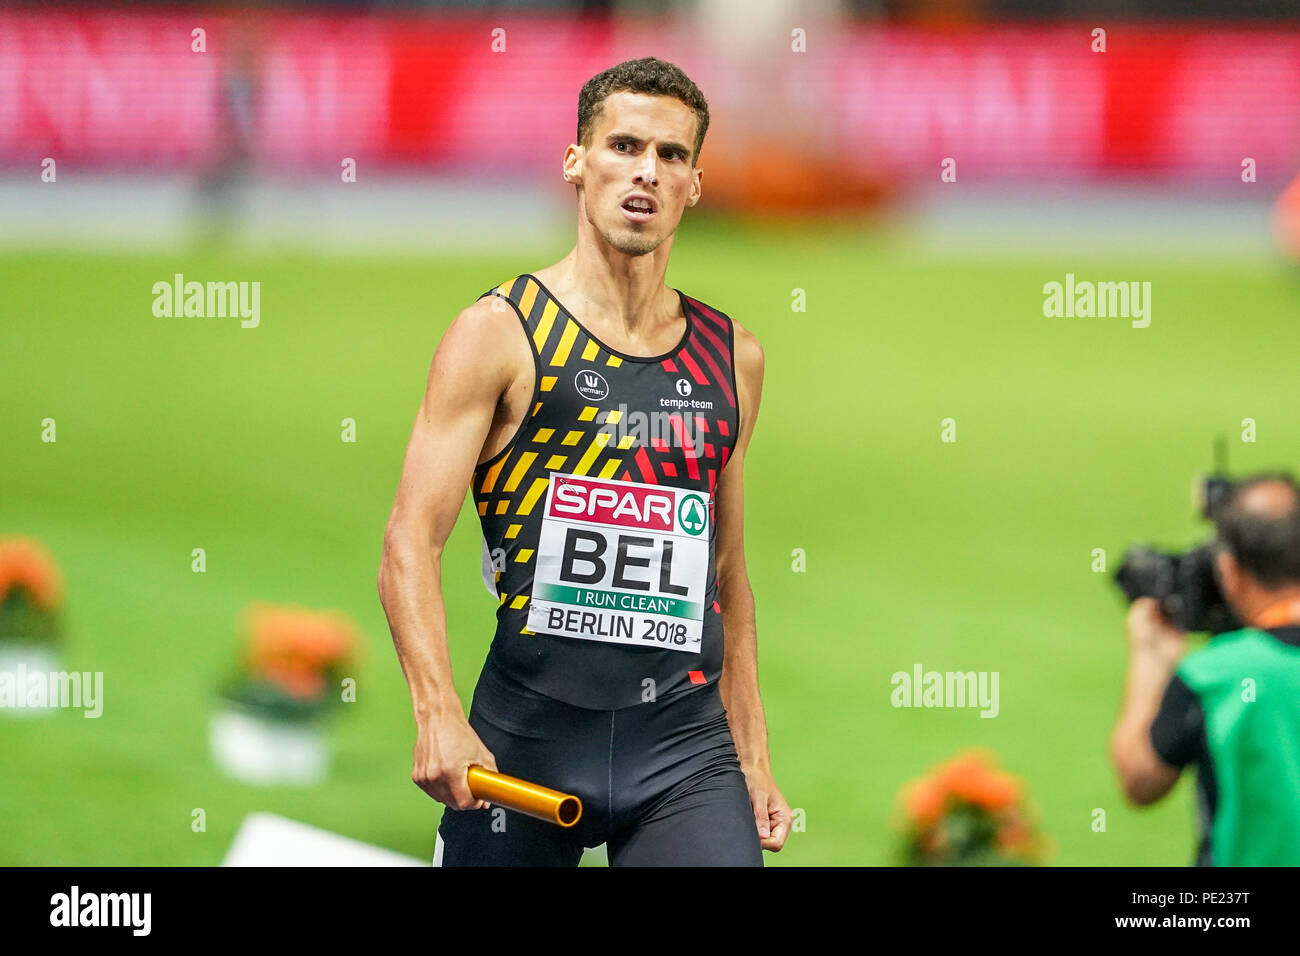 11 août 2018 : Belgique gagner 4 fois 400 mètres pour les hommes finale au Stade olympique à Berlin, à l'European Athletics Championship. Ulrik Pedersen/CSM Banque D'Images